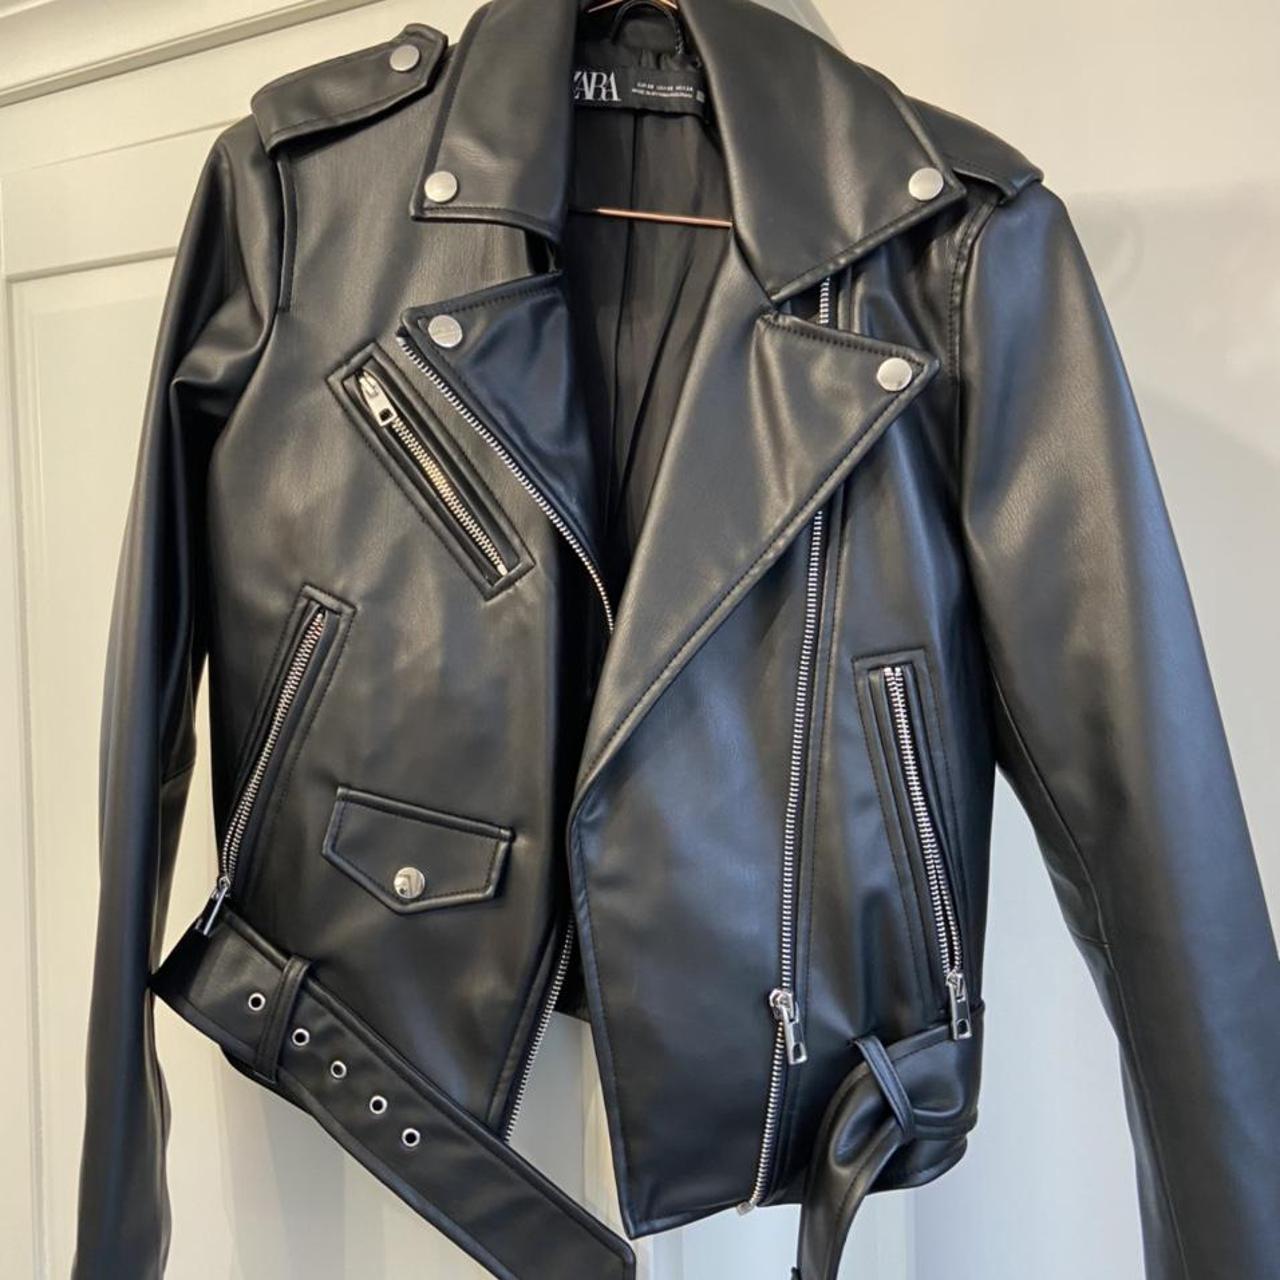 Zara faux leather biker jacket in an extra small -... - Depop